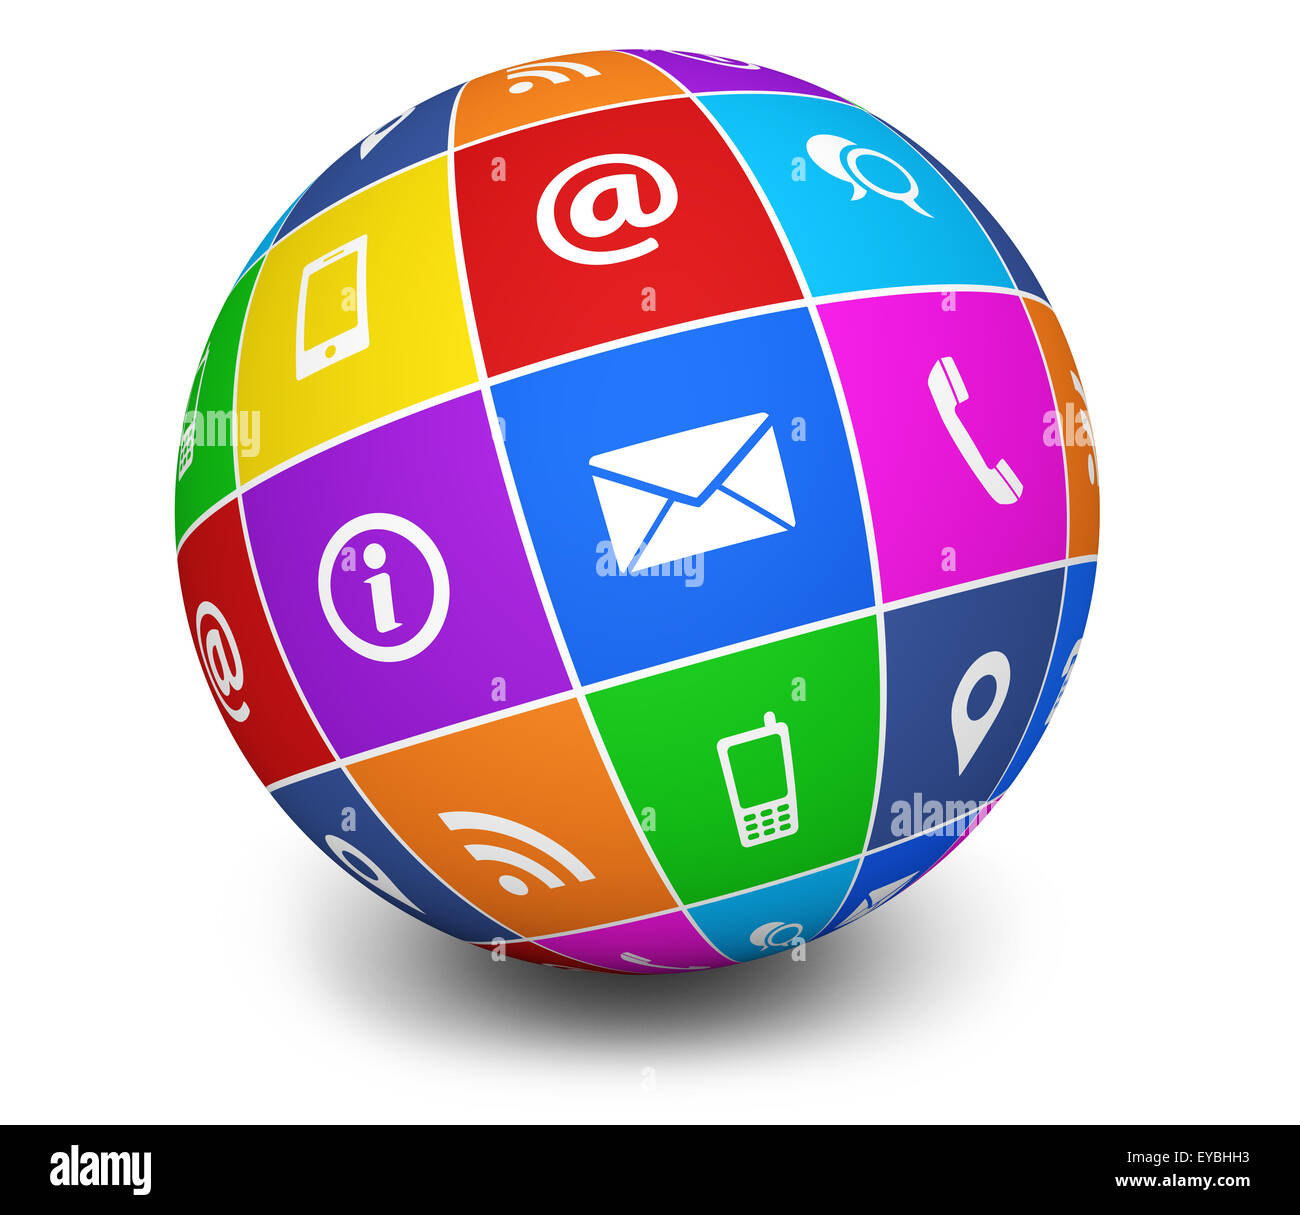 Sito web e internet contattaci web icone e simbolo in un colorato mondo di blog e business online illustrazione sul retro bianco Foto Stock